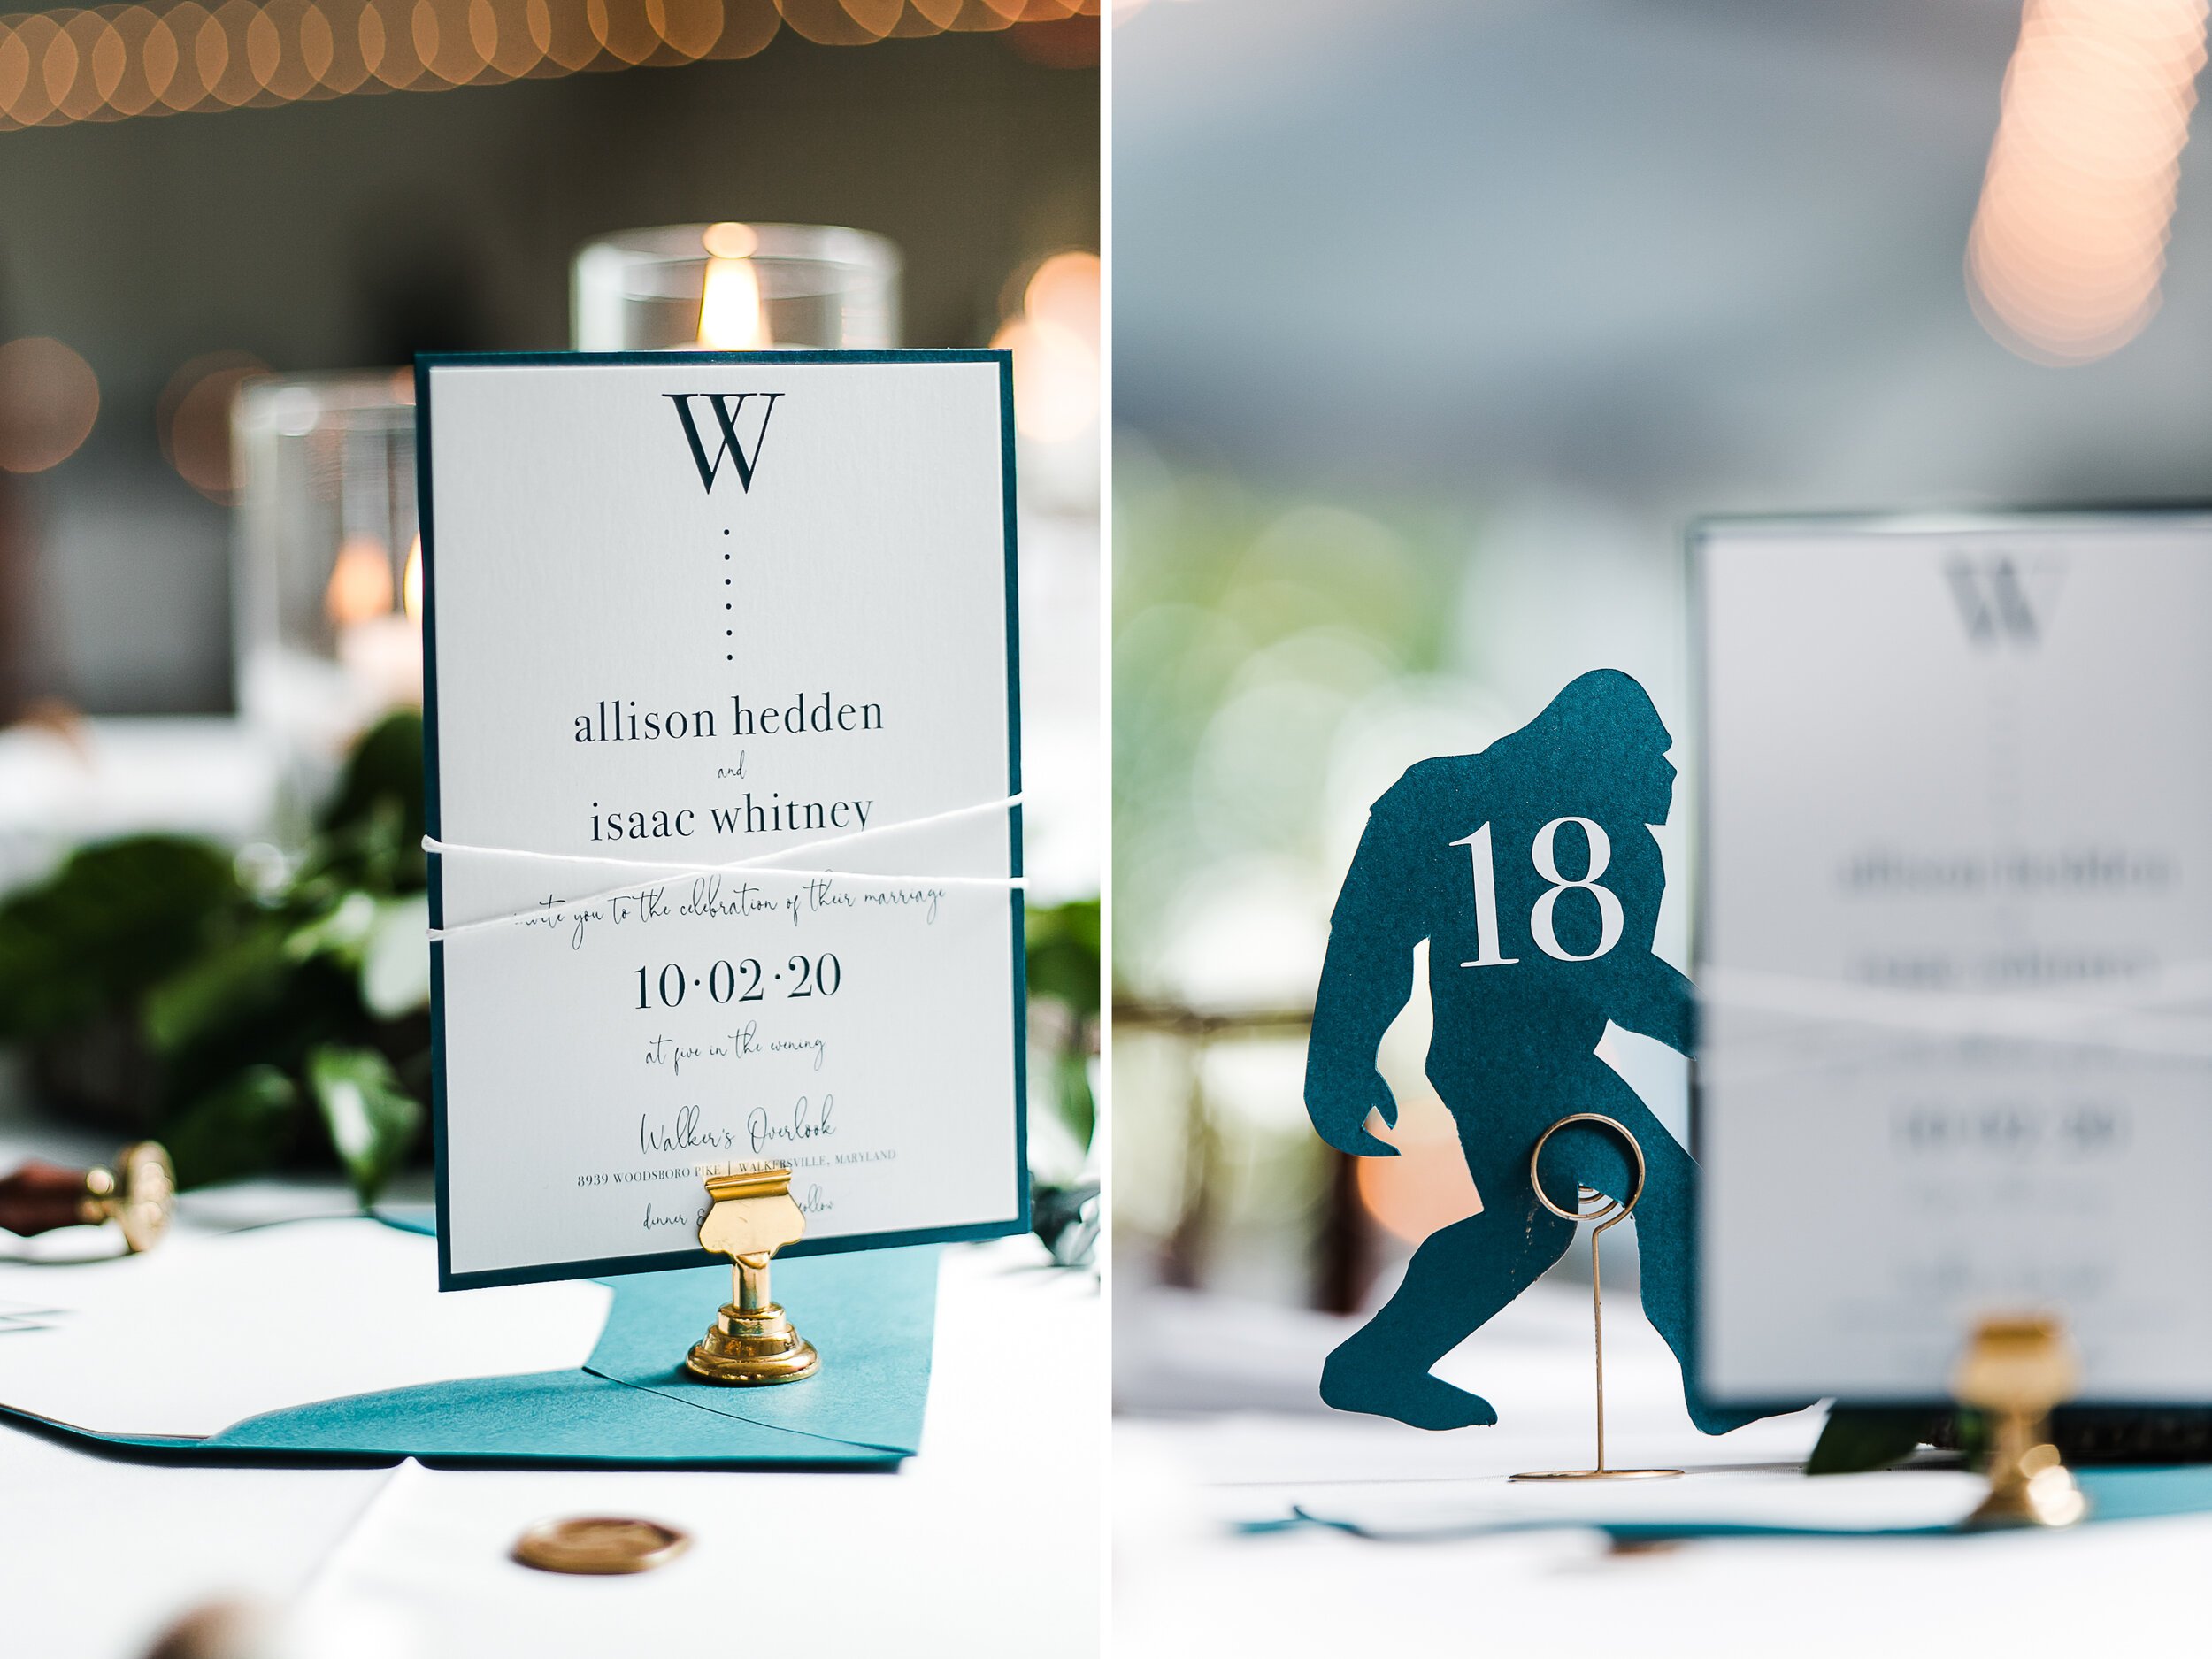  Wedding reception details - simply Rosie designs 